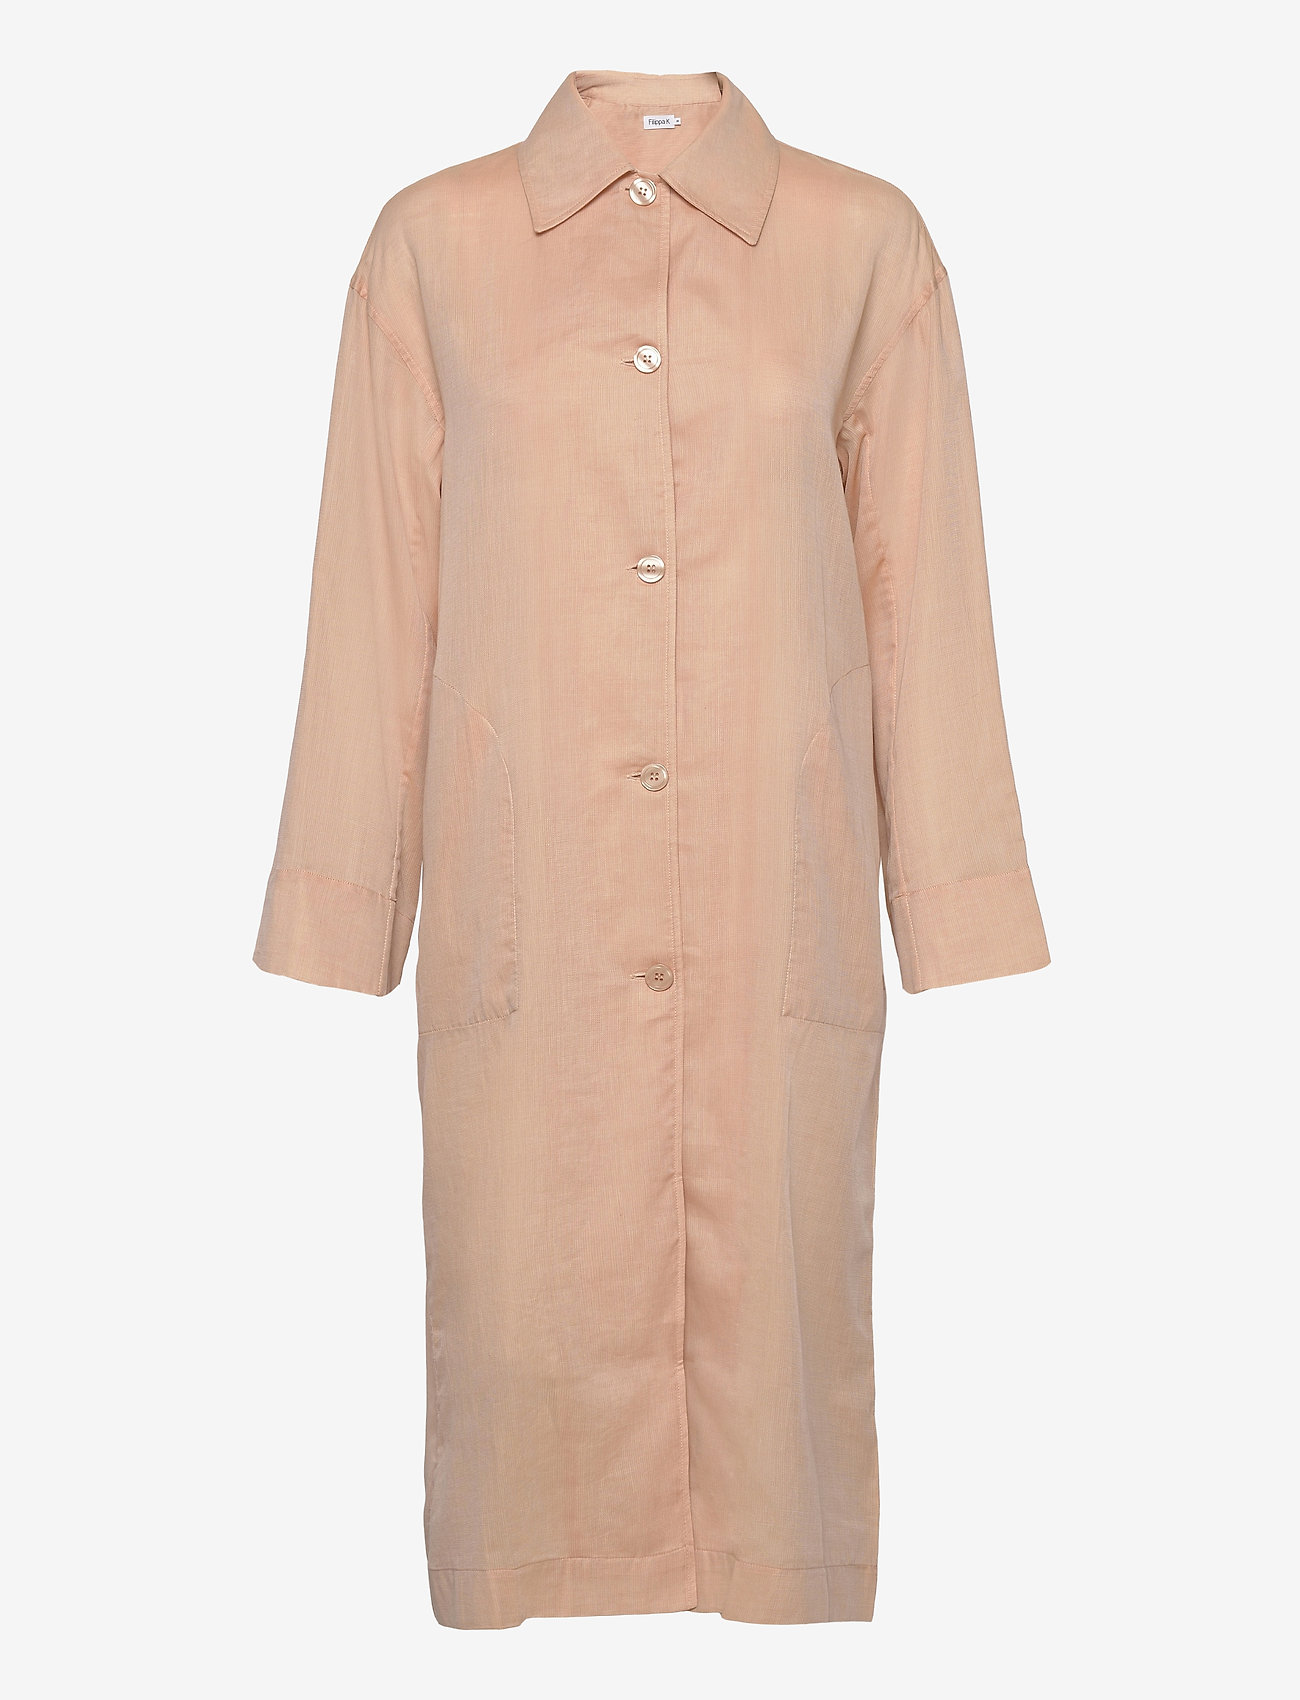 Filippa K - Georgia Coat Dress - marškinių tipo suknelės - maplewood - 0